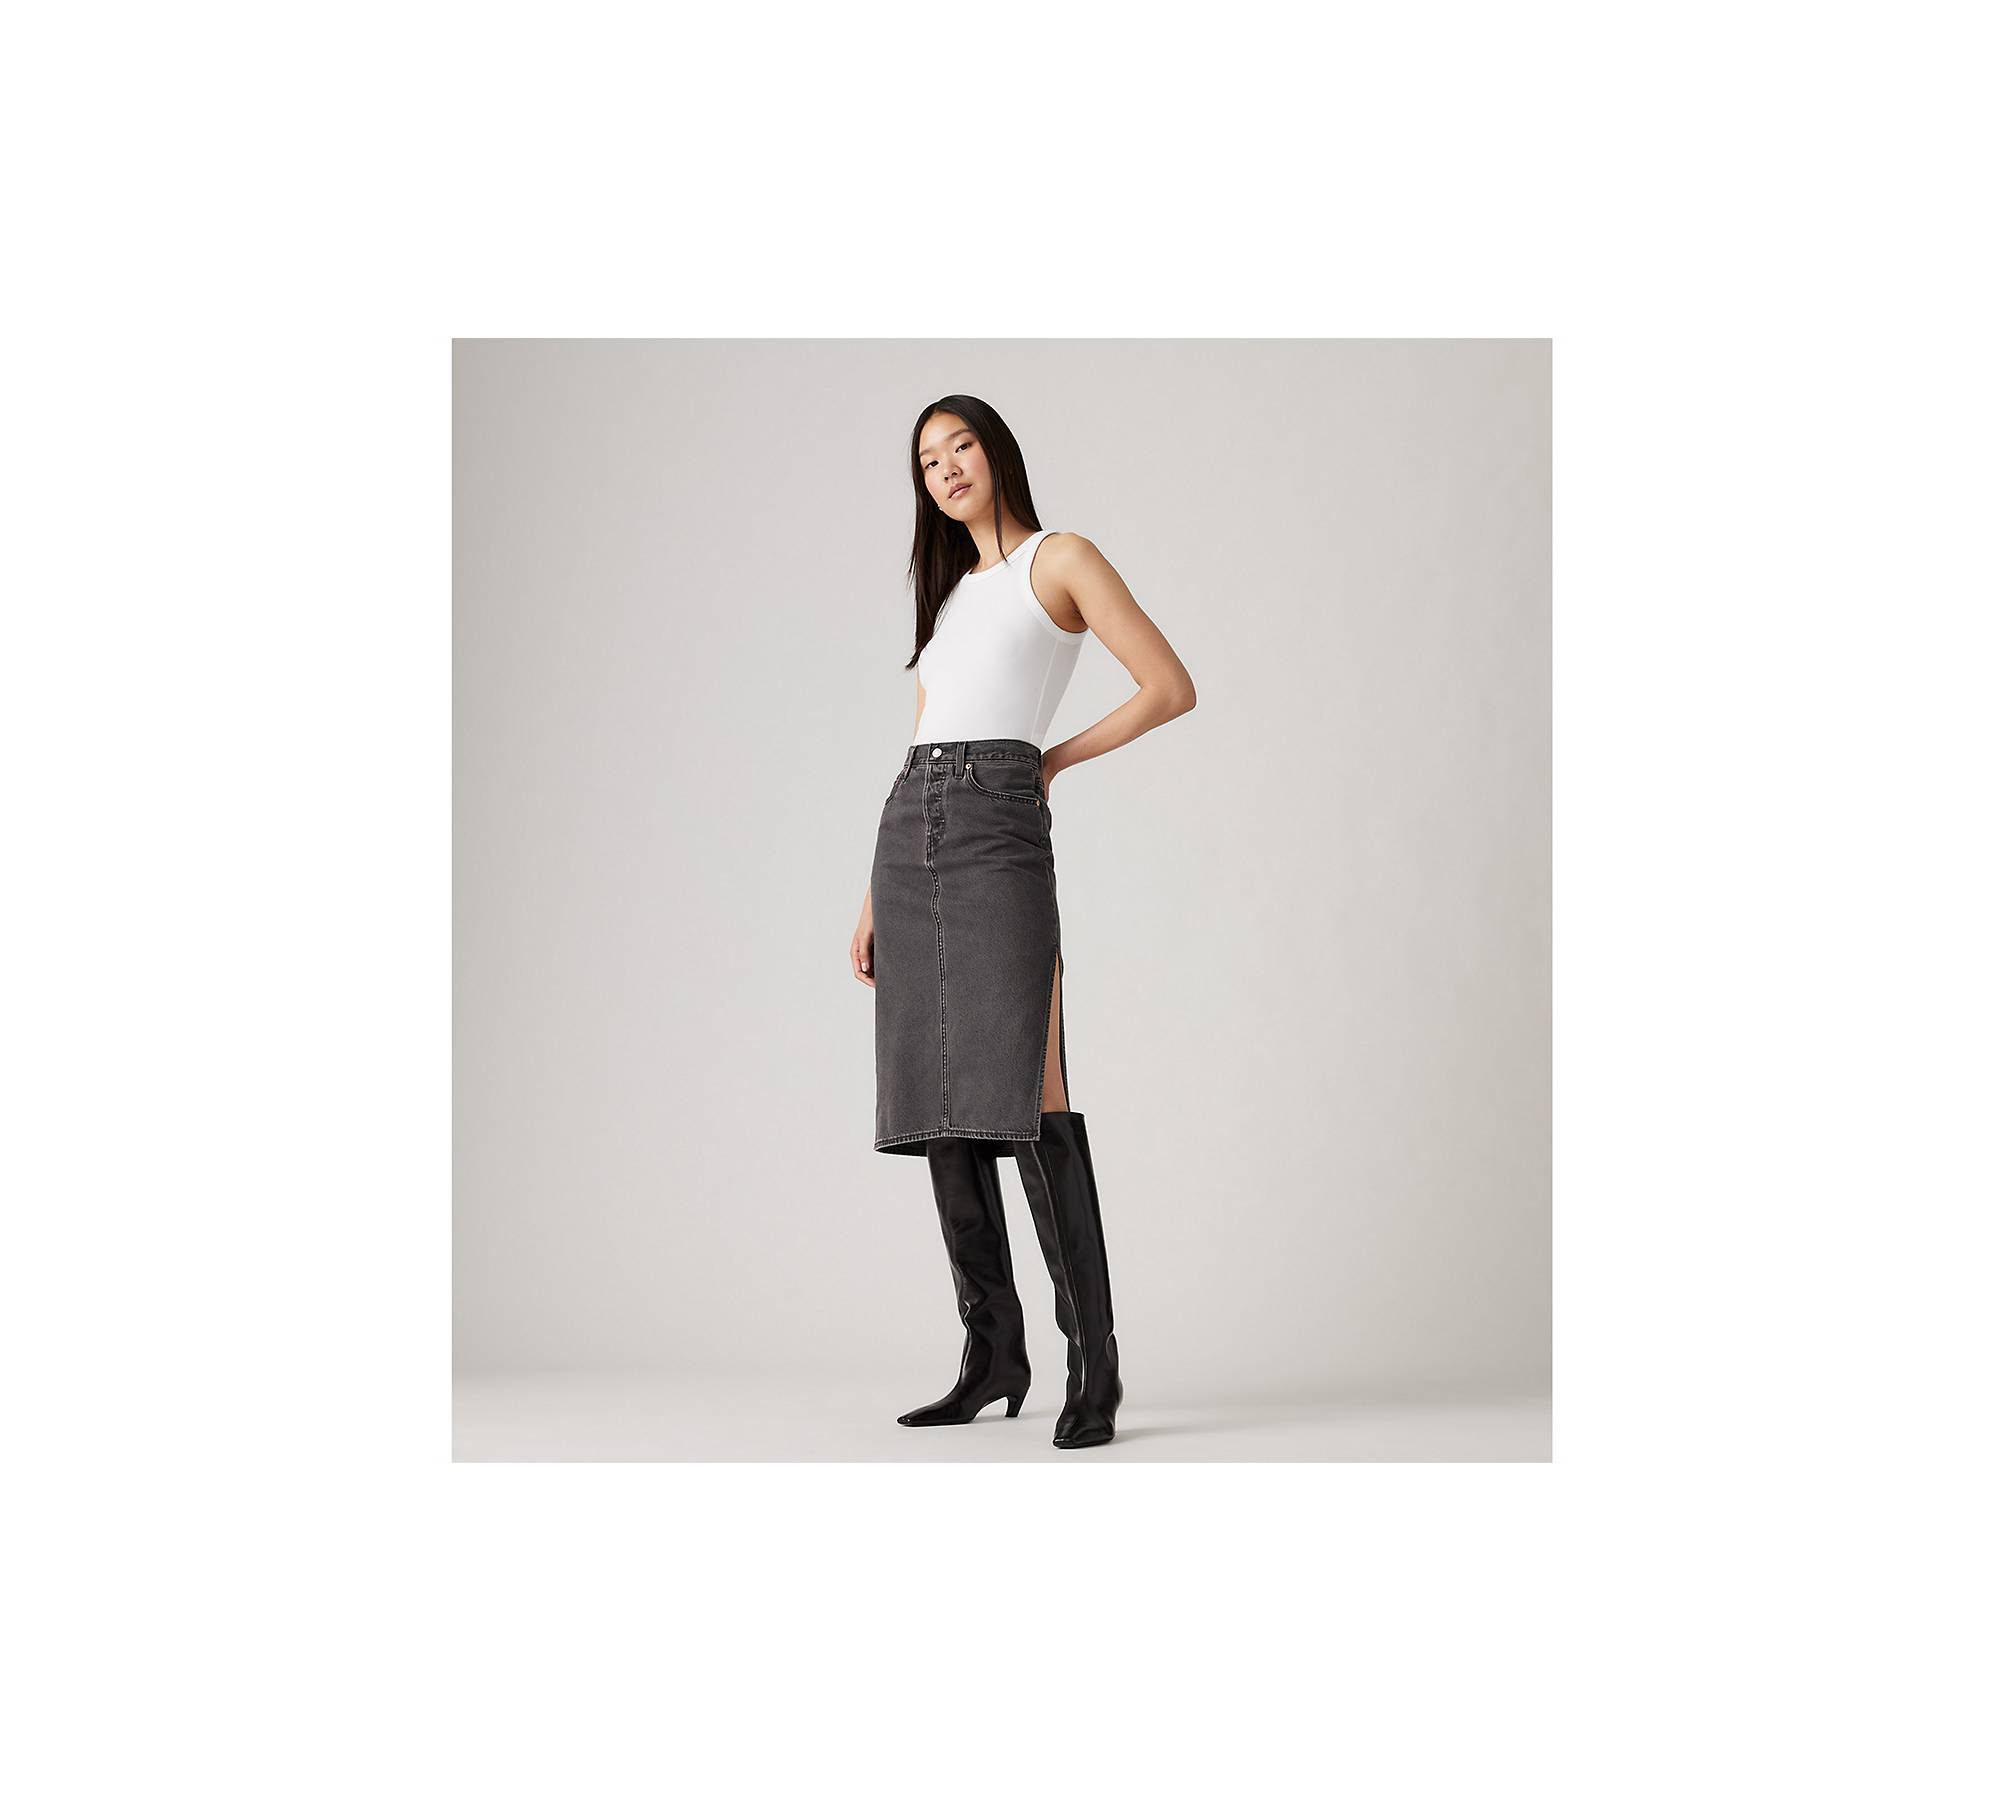 Slit-hem Skirt - Black/white patterned - Ladies